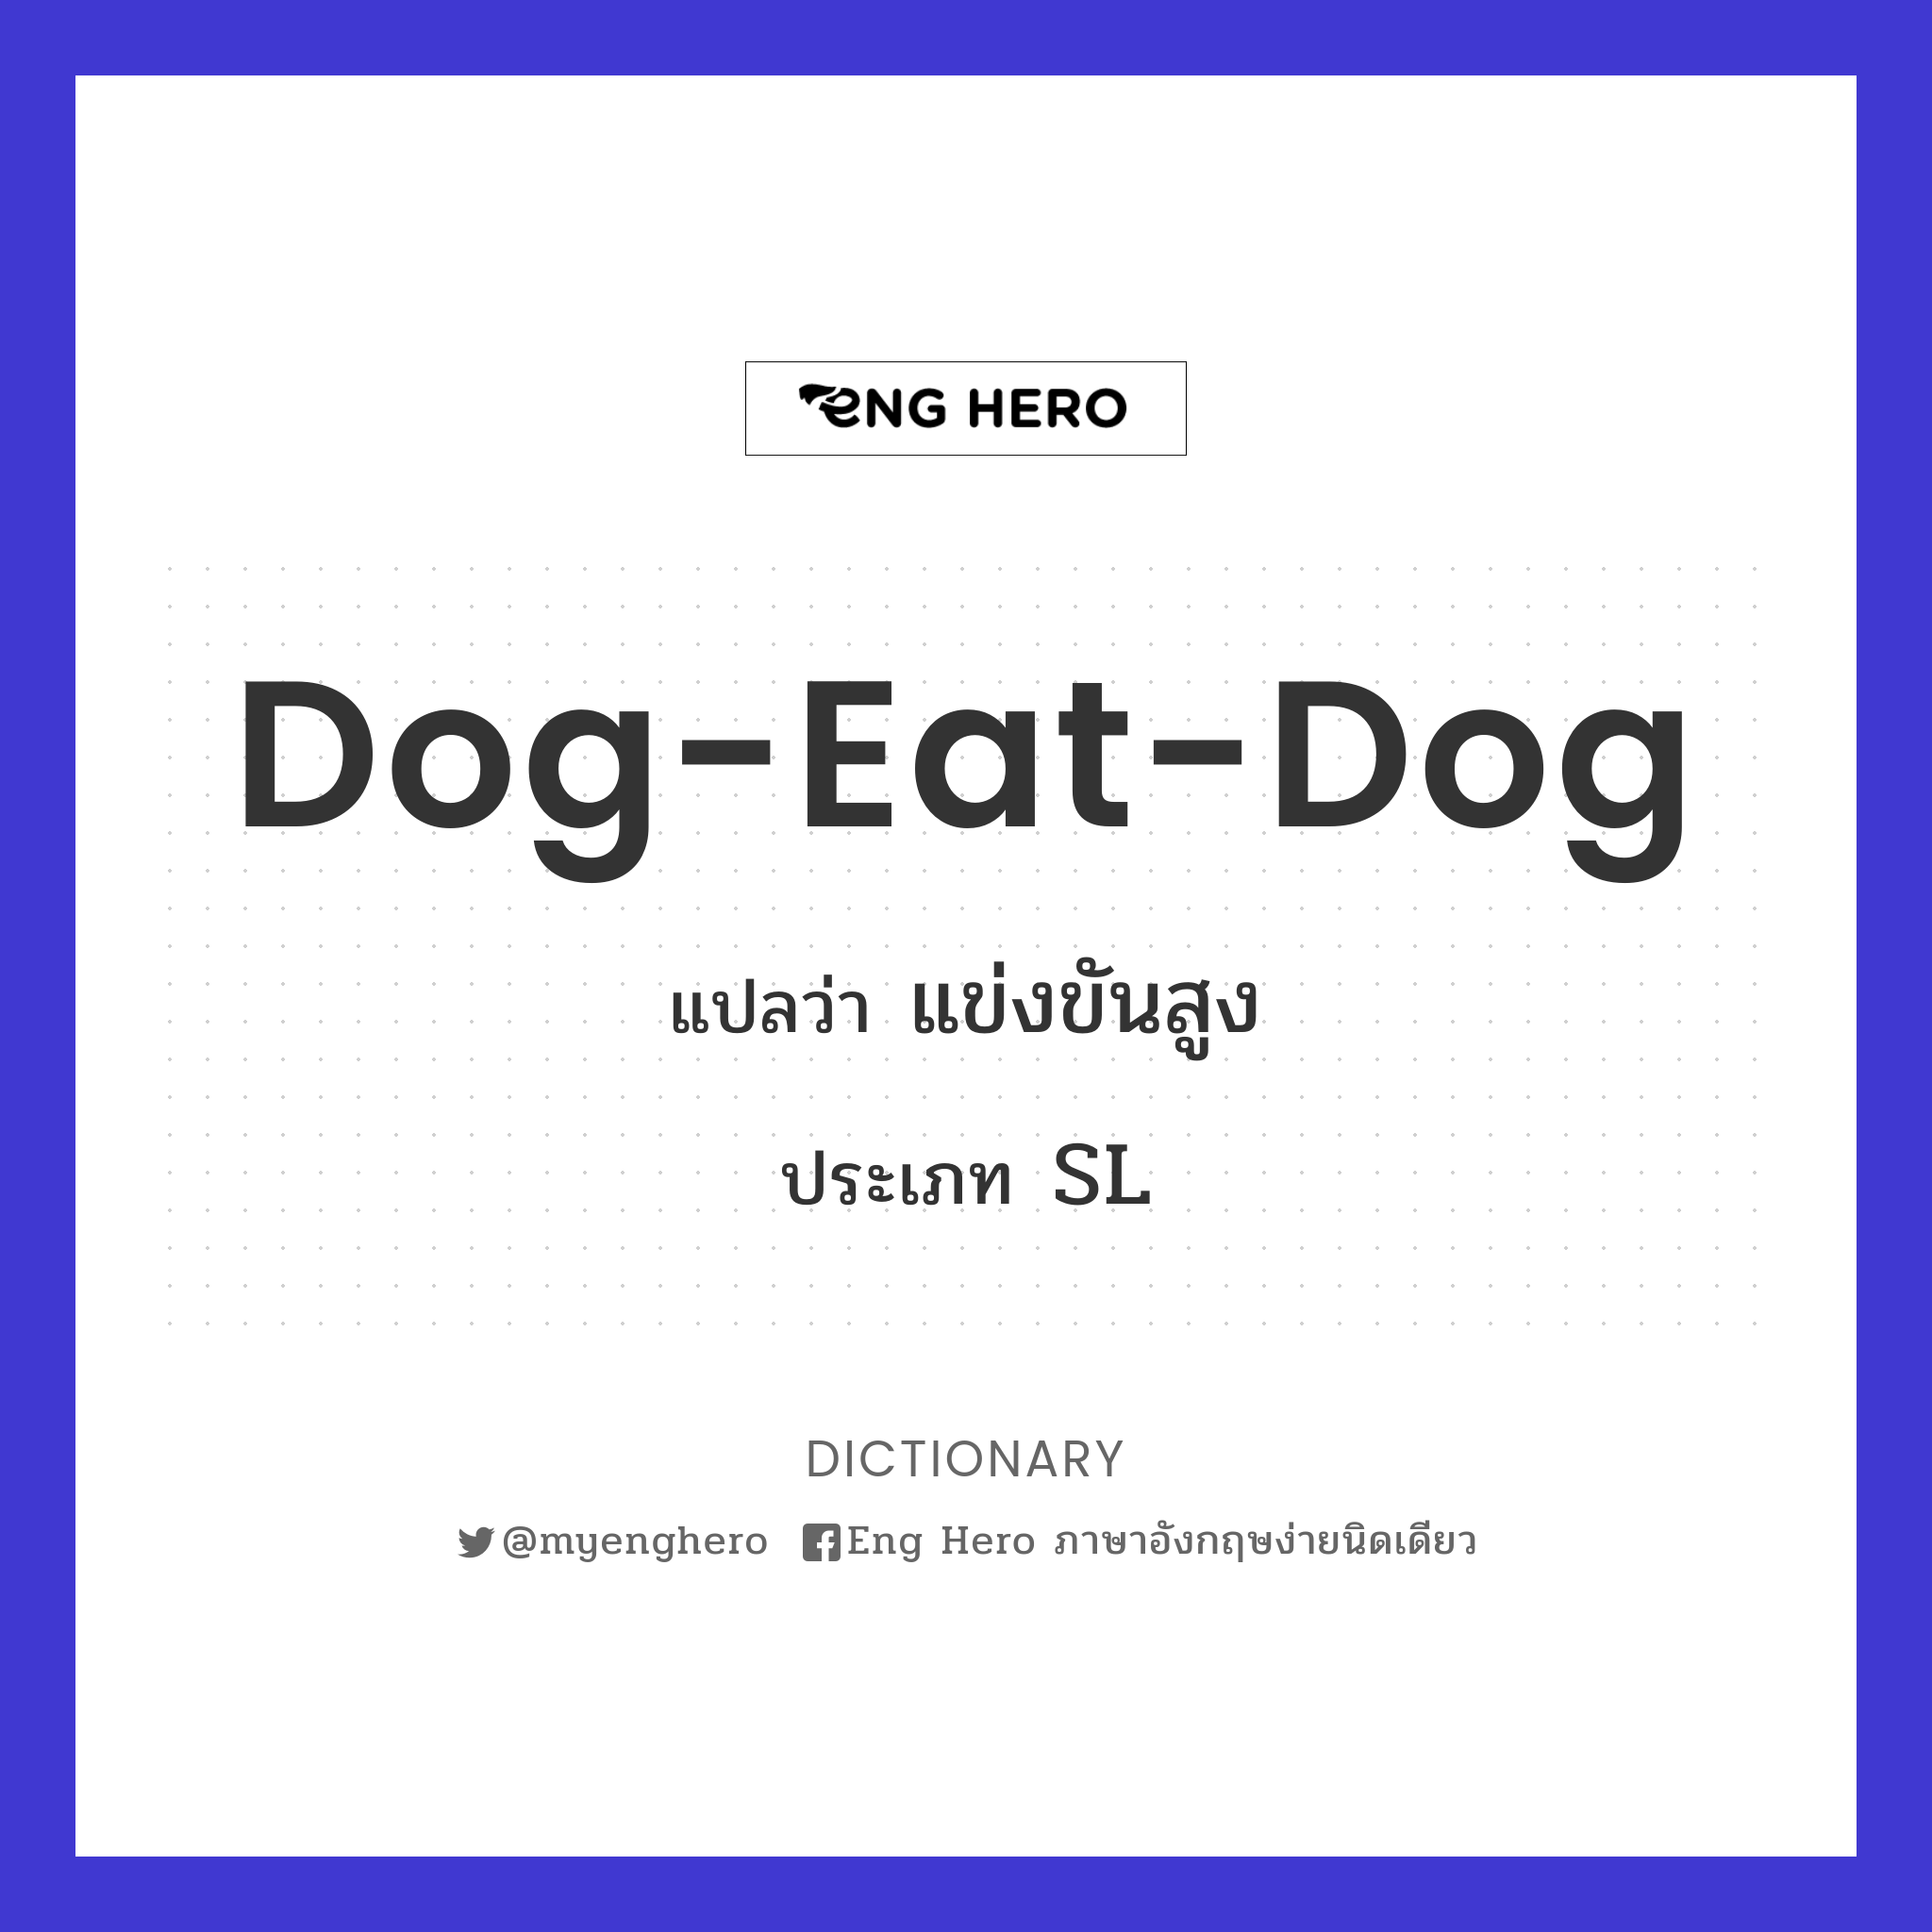 dog-eat-dog